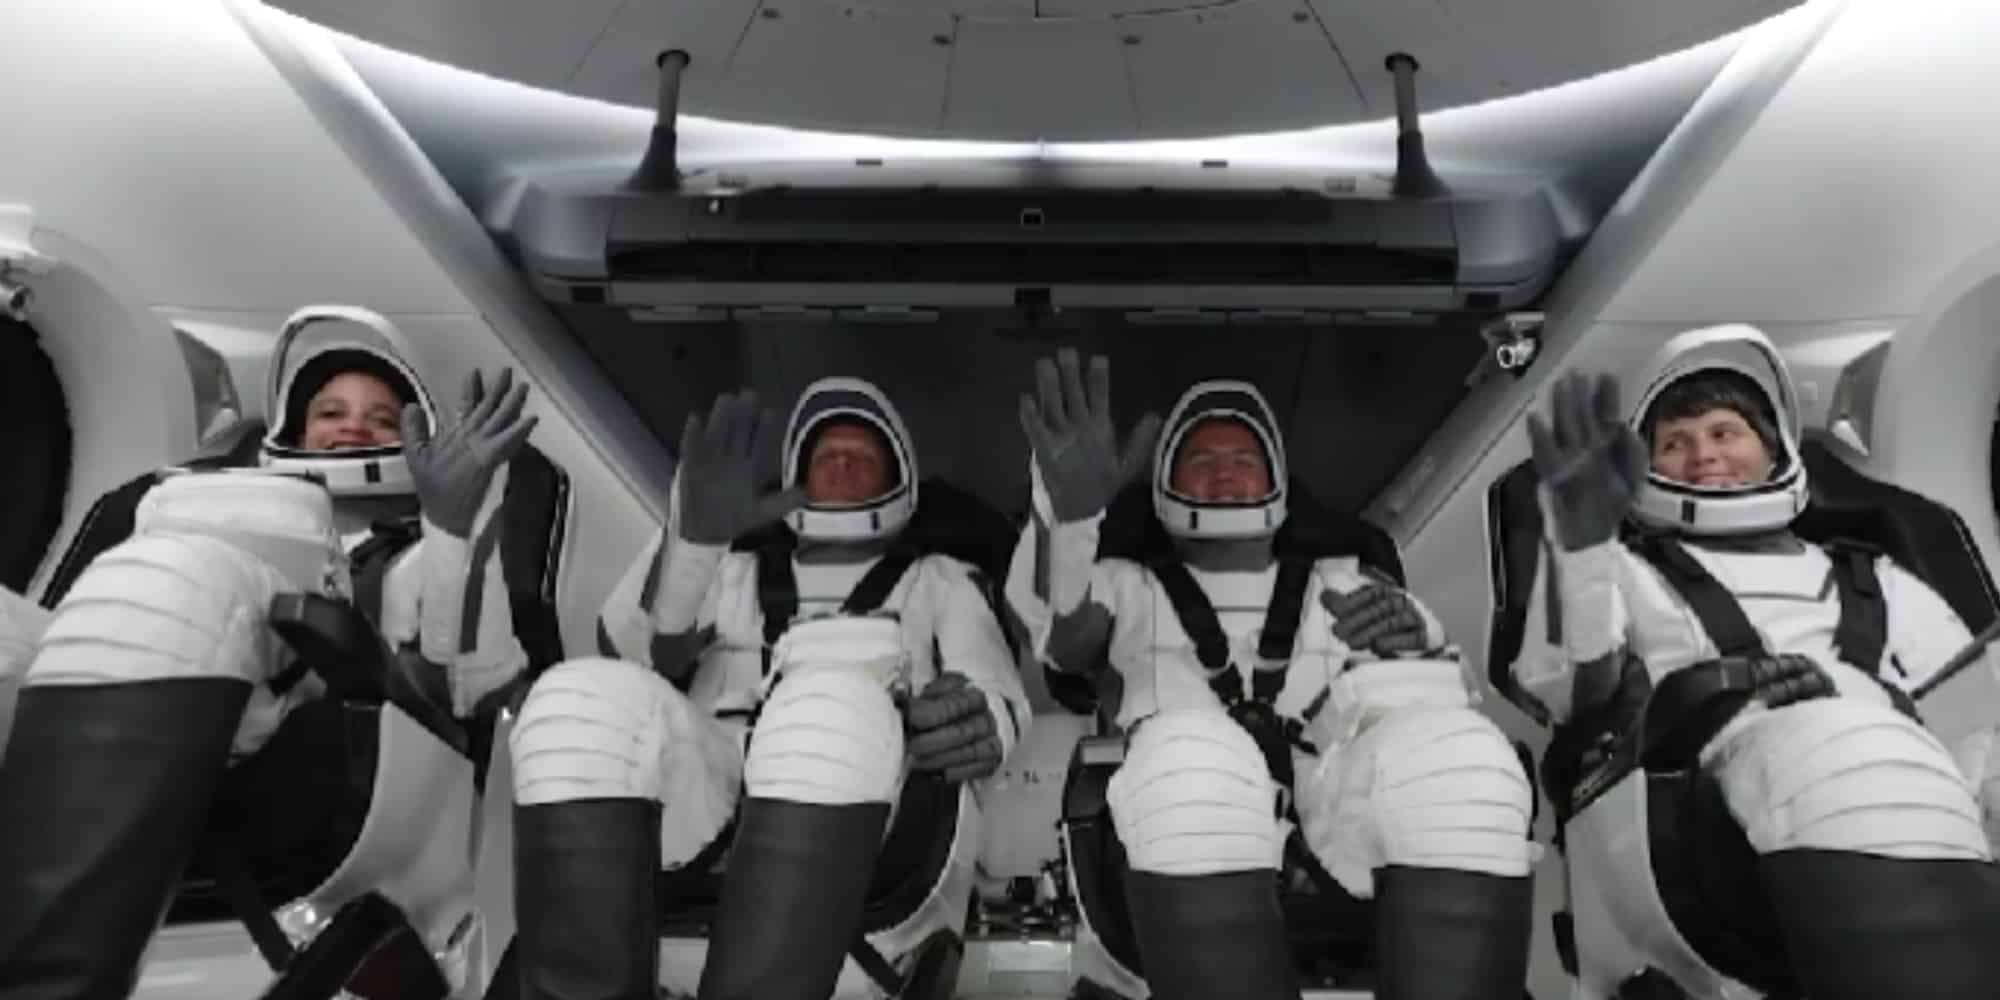 αστροναυτες - SpaceX: Στο Διάστημα τέσσερις αστροναύτες του Έλον Μασκ - Έφτασαν στον Διεθνή Διαστημικό Σταθμό (βίντεο)